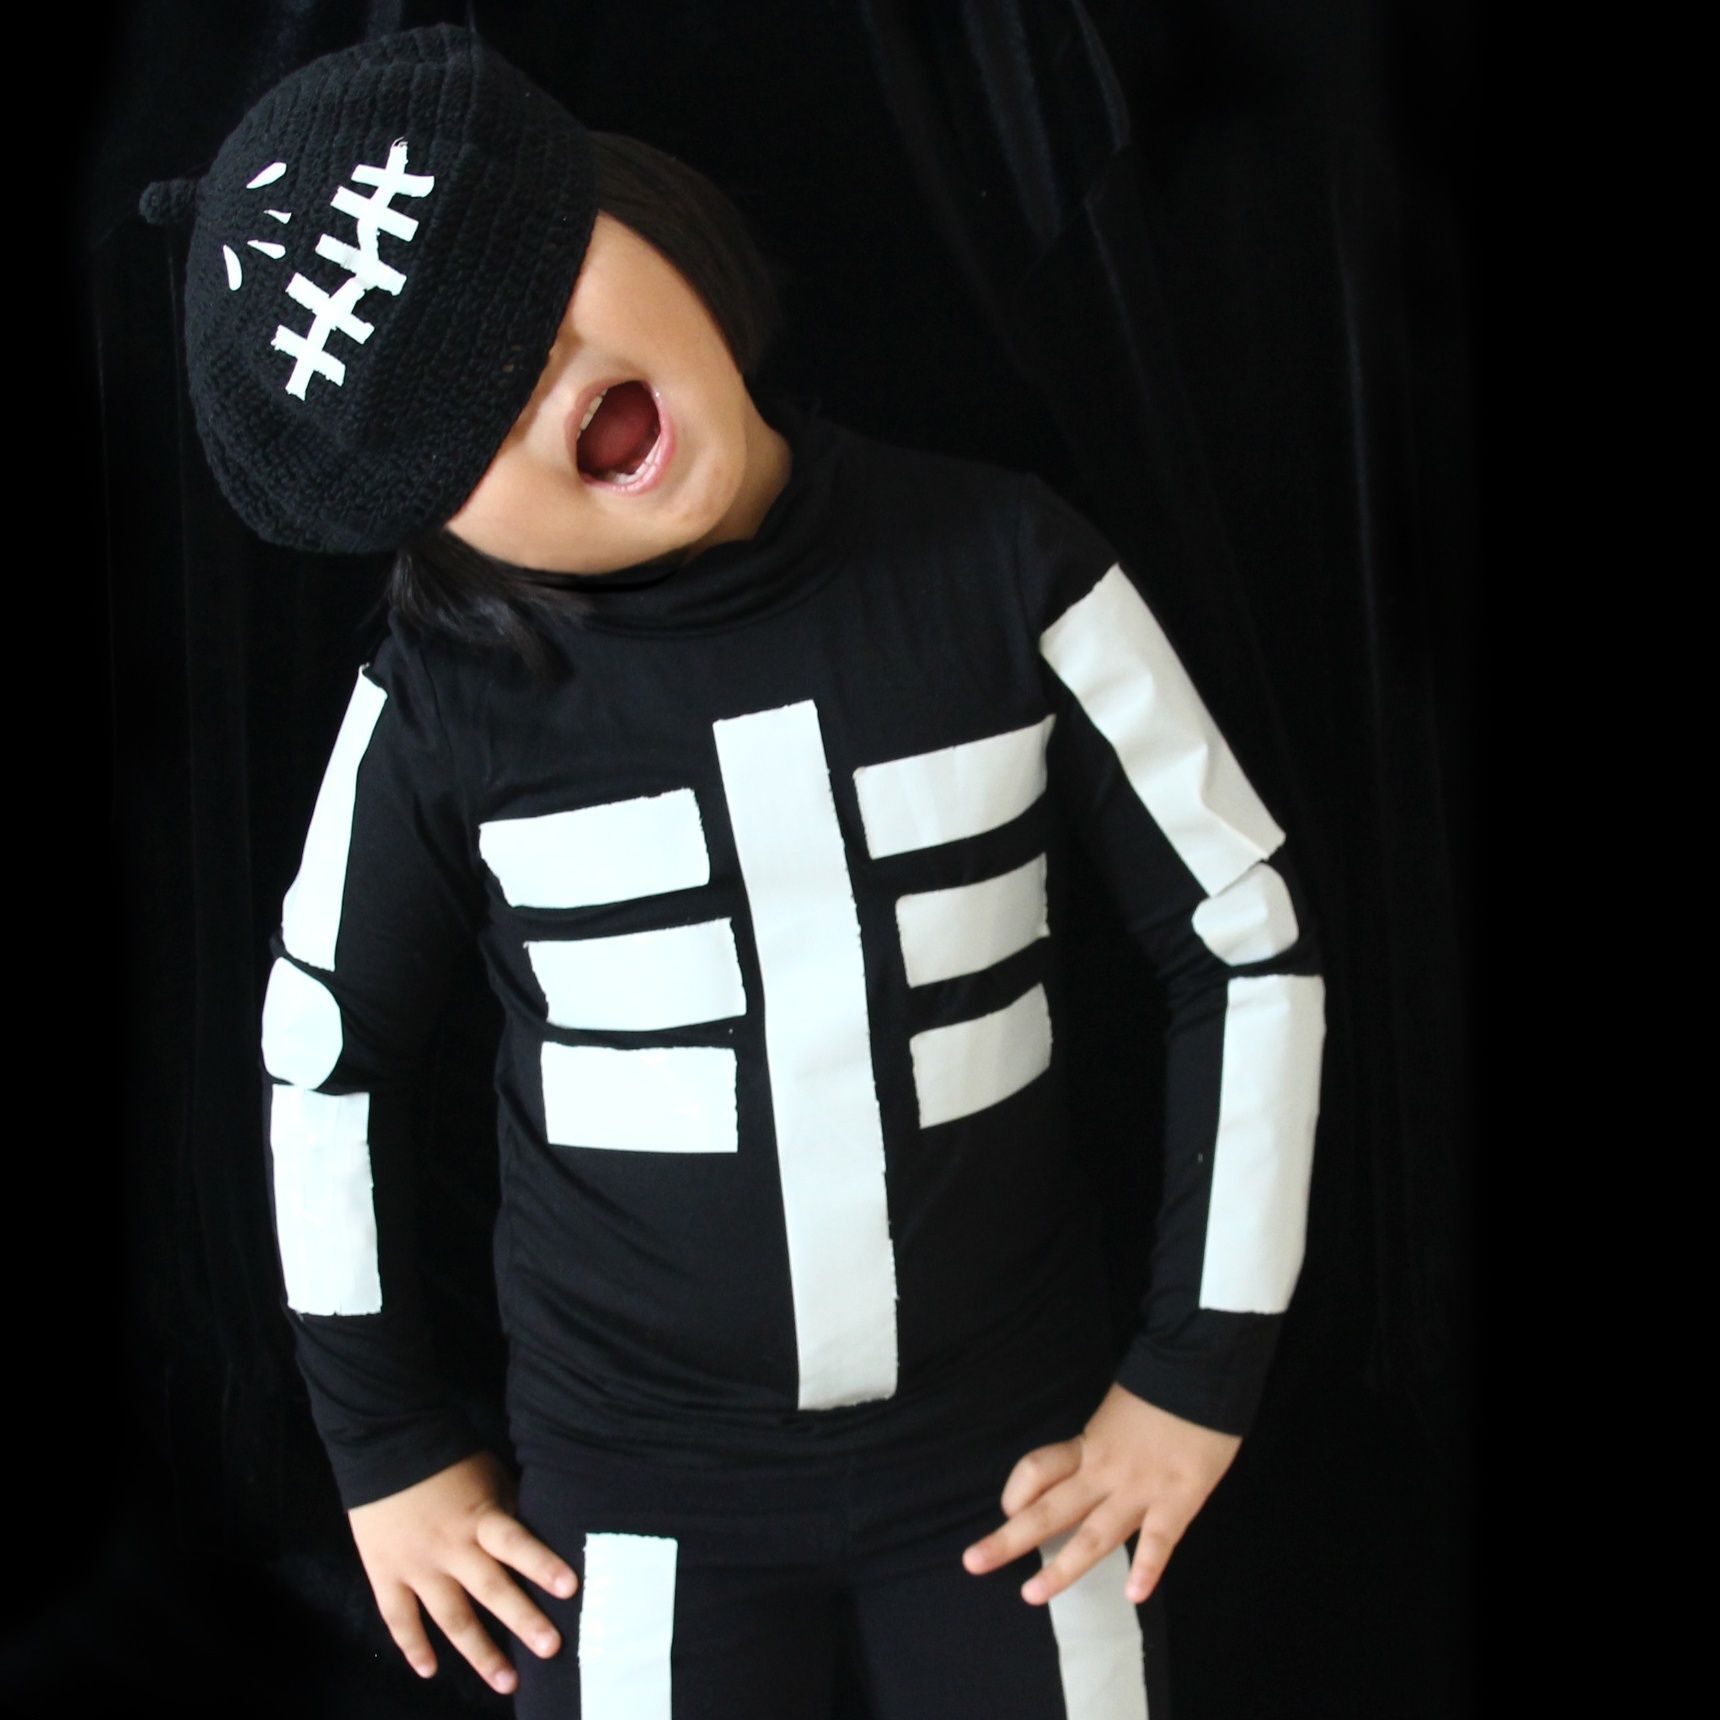 ハロウィン仮装 子供も簡単100円で可愛いガイコツ衣装 作り方 暮らしニスタ